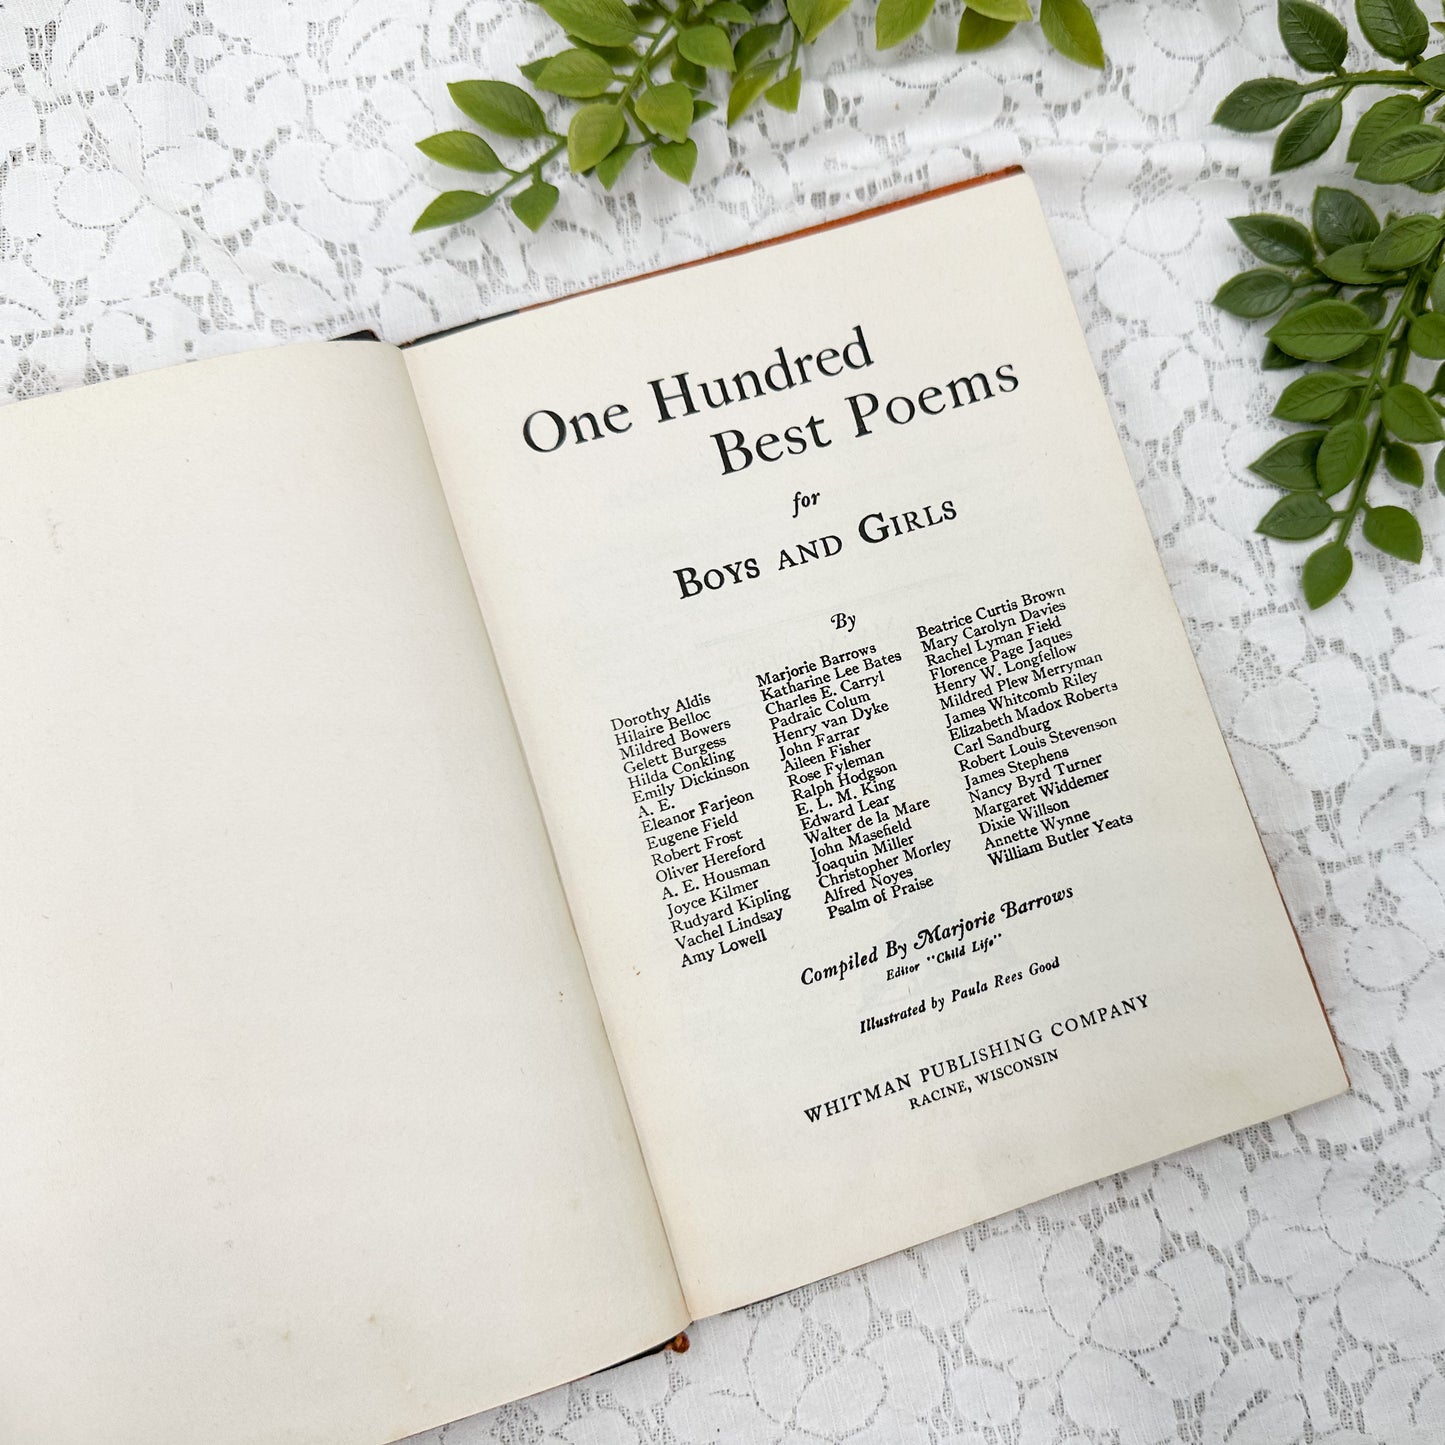 One Hundred Best Poems- 1930